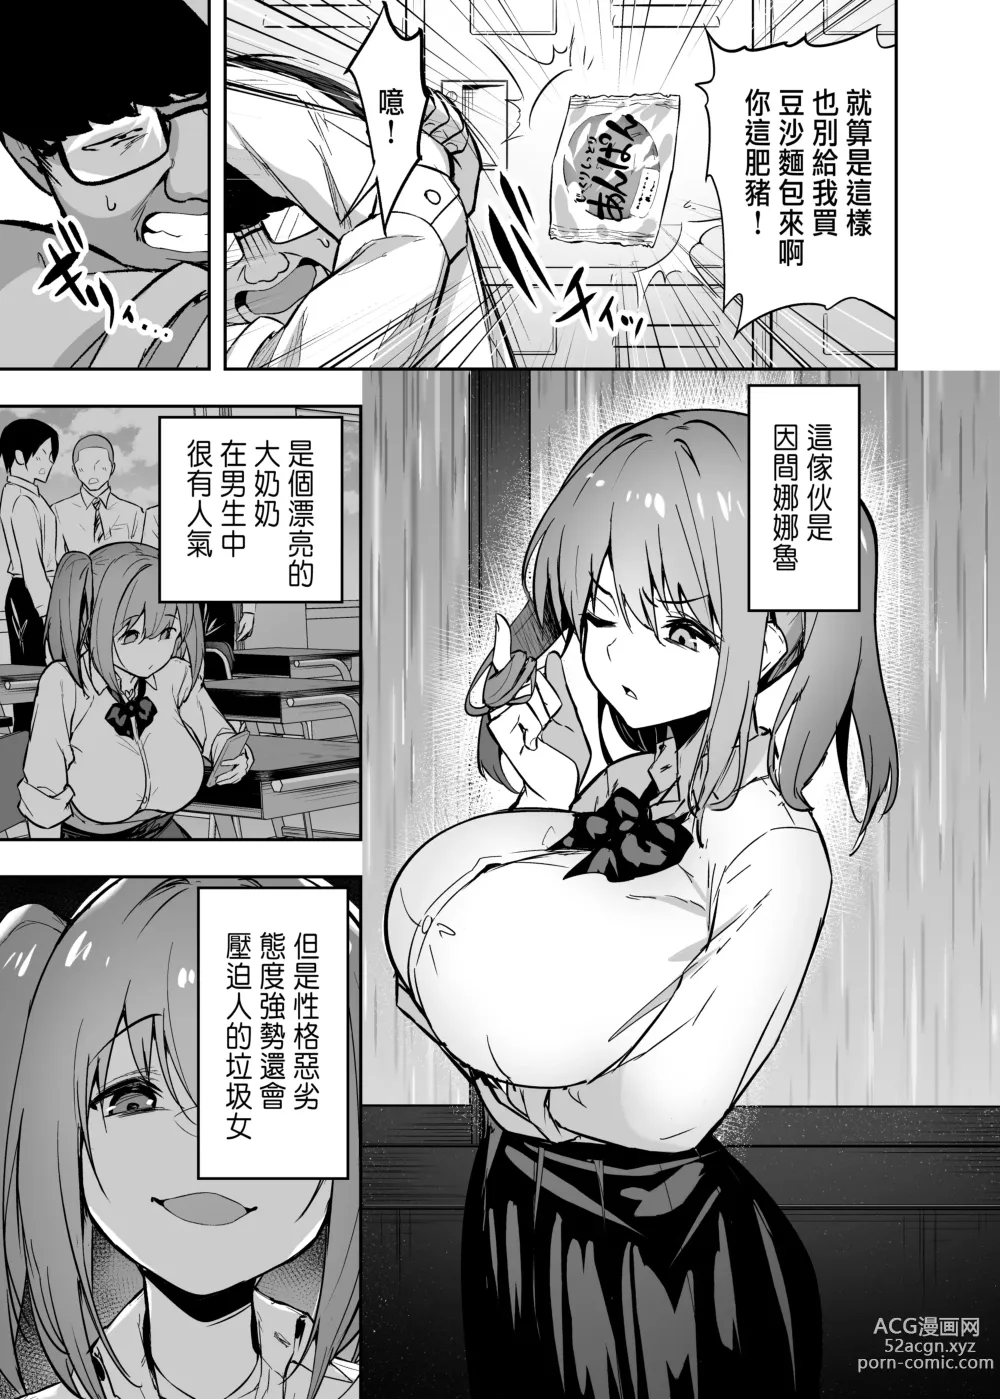 Page 6 of doujinshi 把囂張狂妄的辣妹變成魅魔來懲罰1+1.5+2